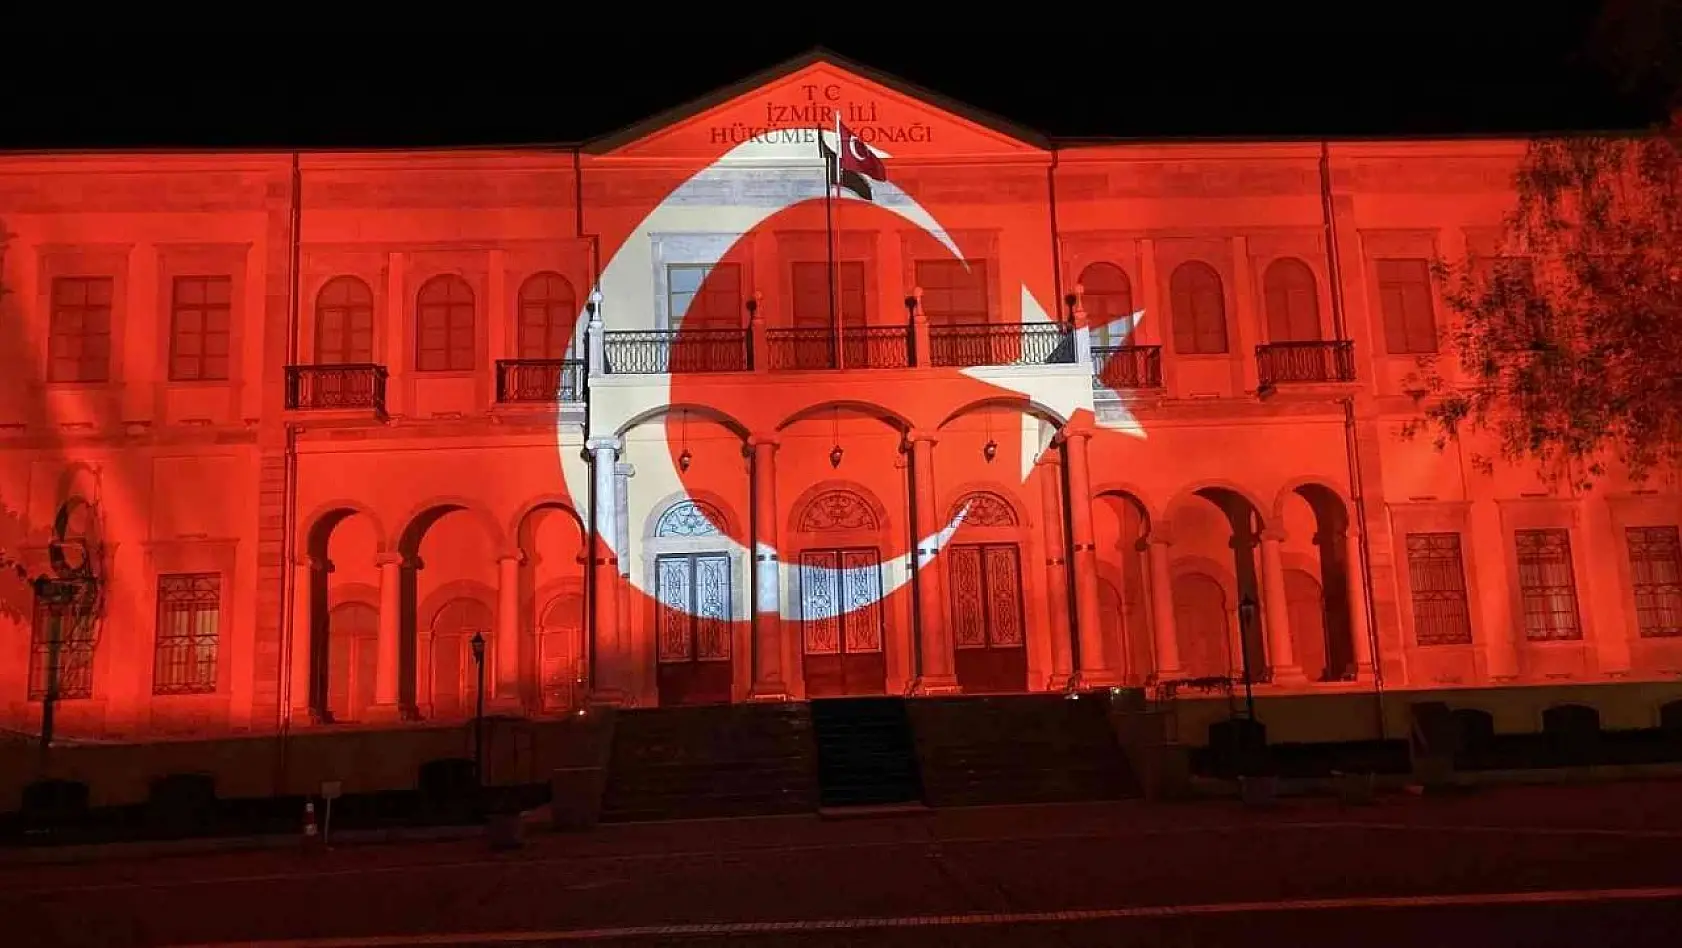 Bakan Nebati, İzmir İktisat Kongresi'nin 100. yılına özel ışık gösterisini izledi